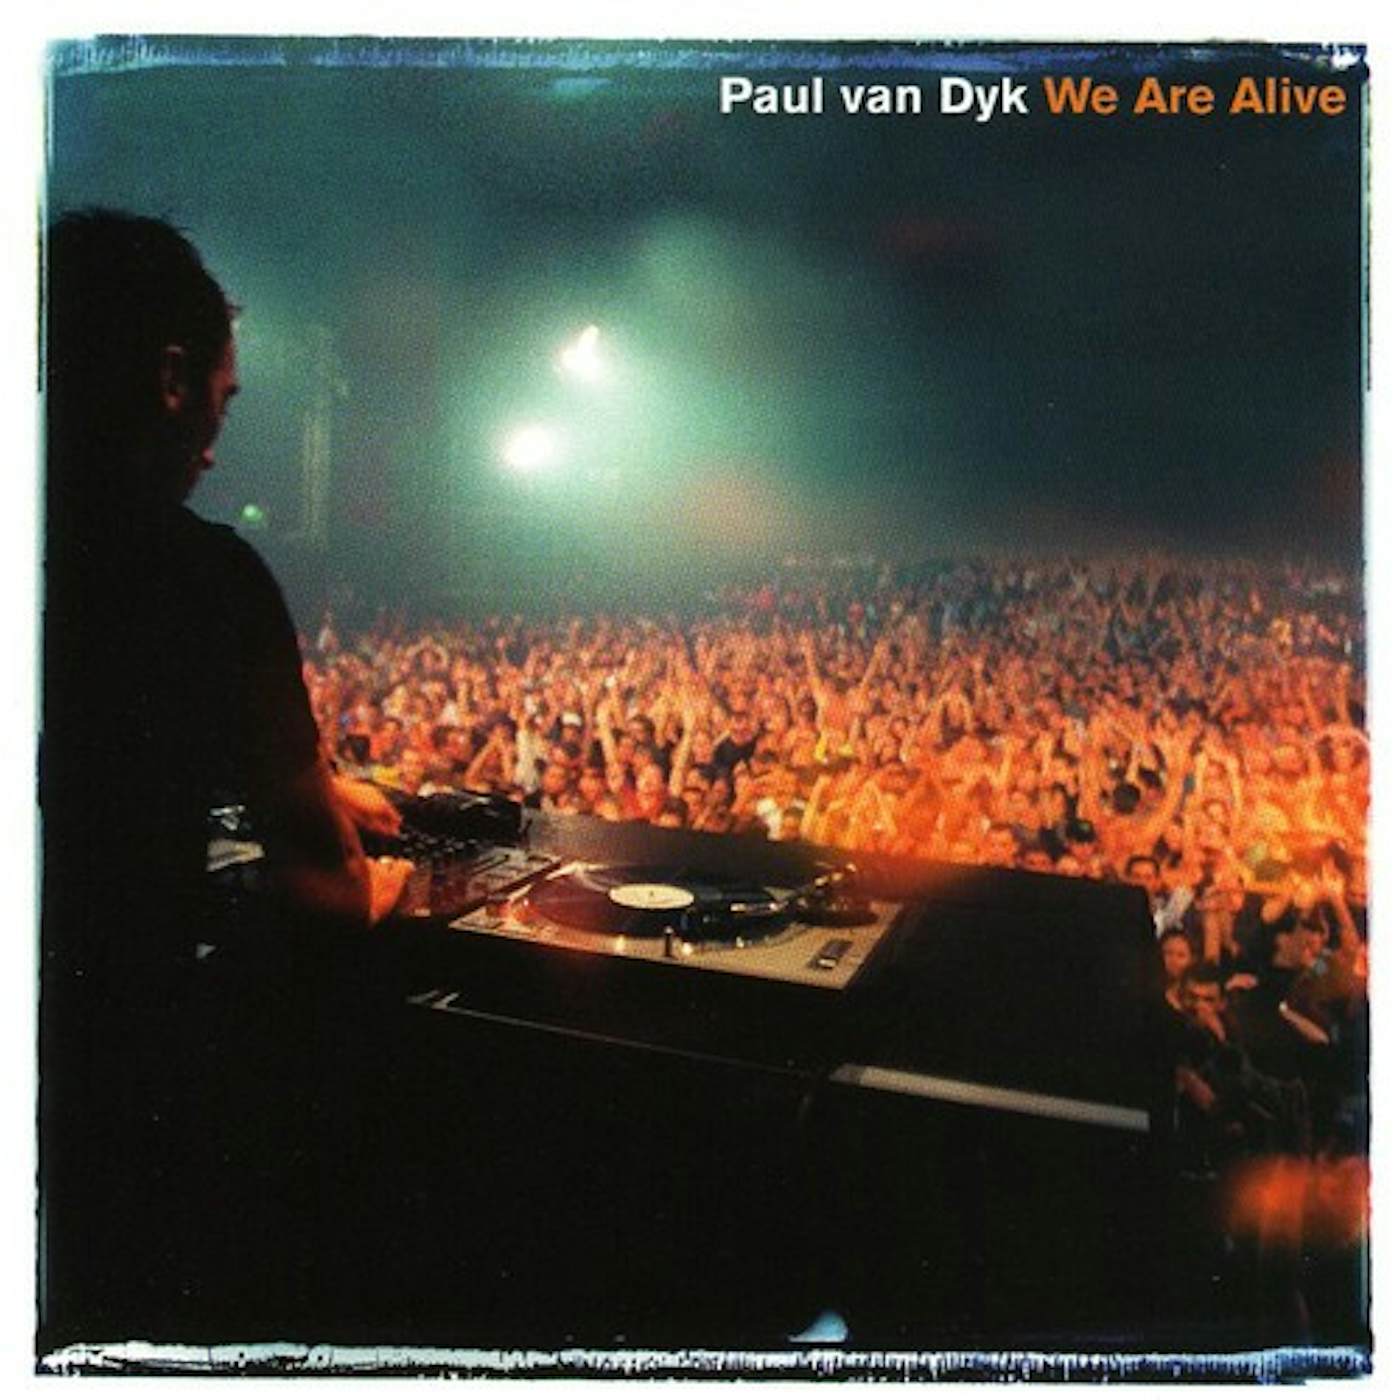 Paul van Dyk WE ARE ALIVE CD